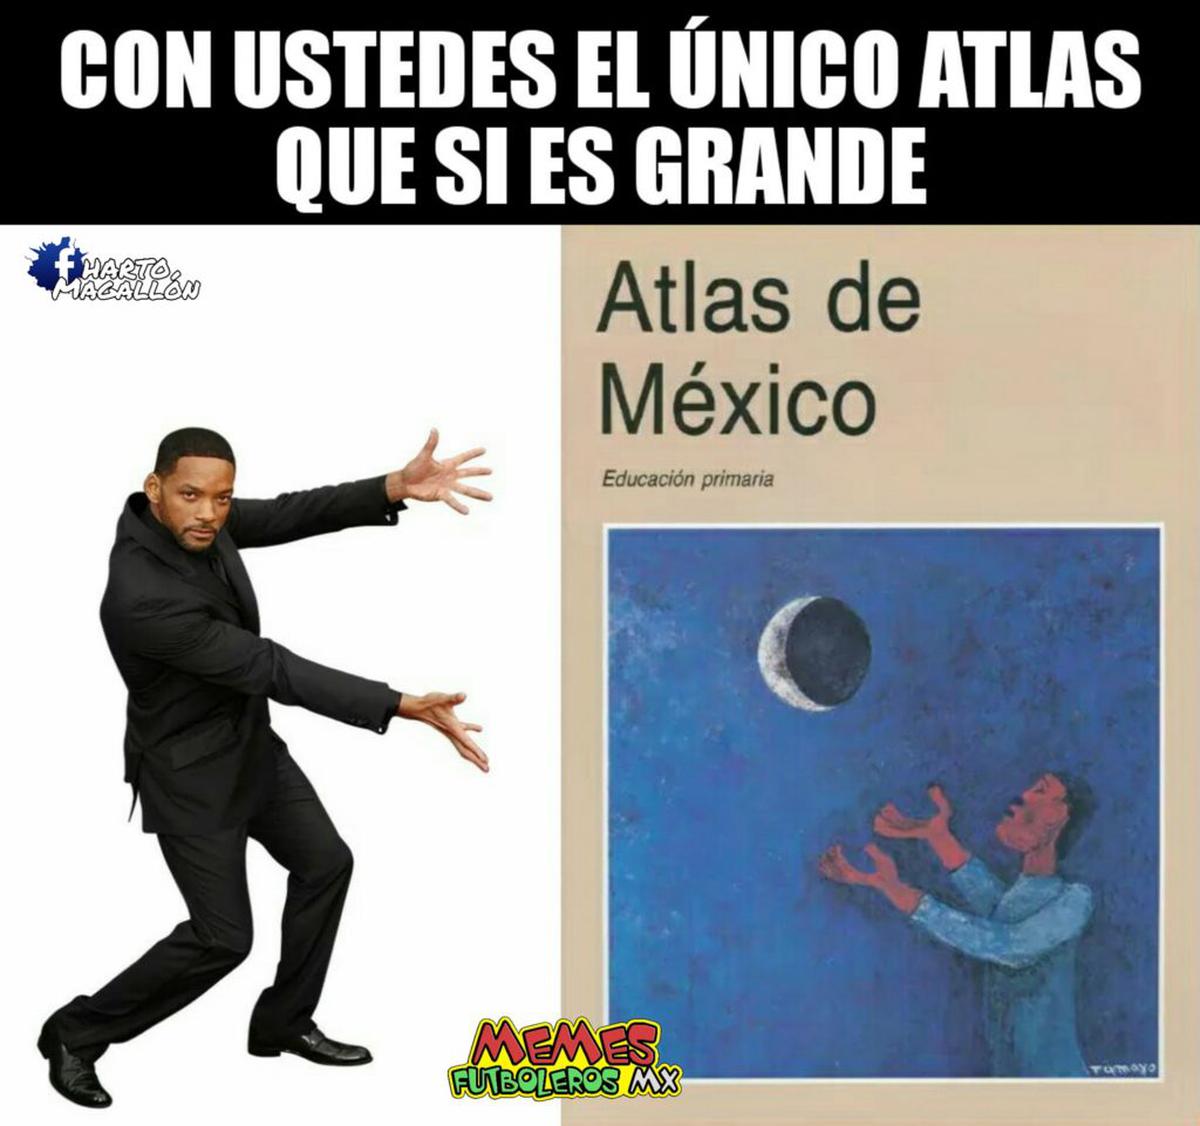  | Cortesía: Memes Futboleros MX